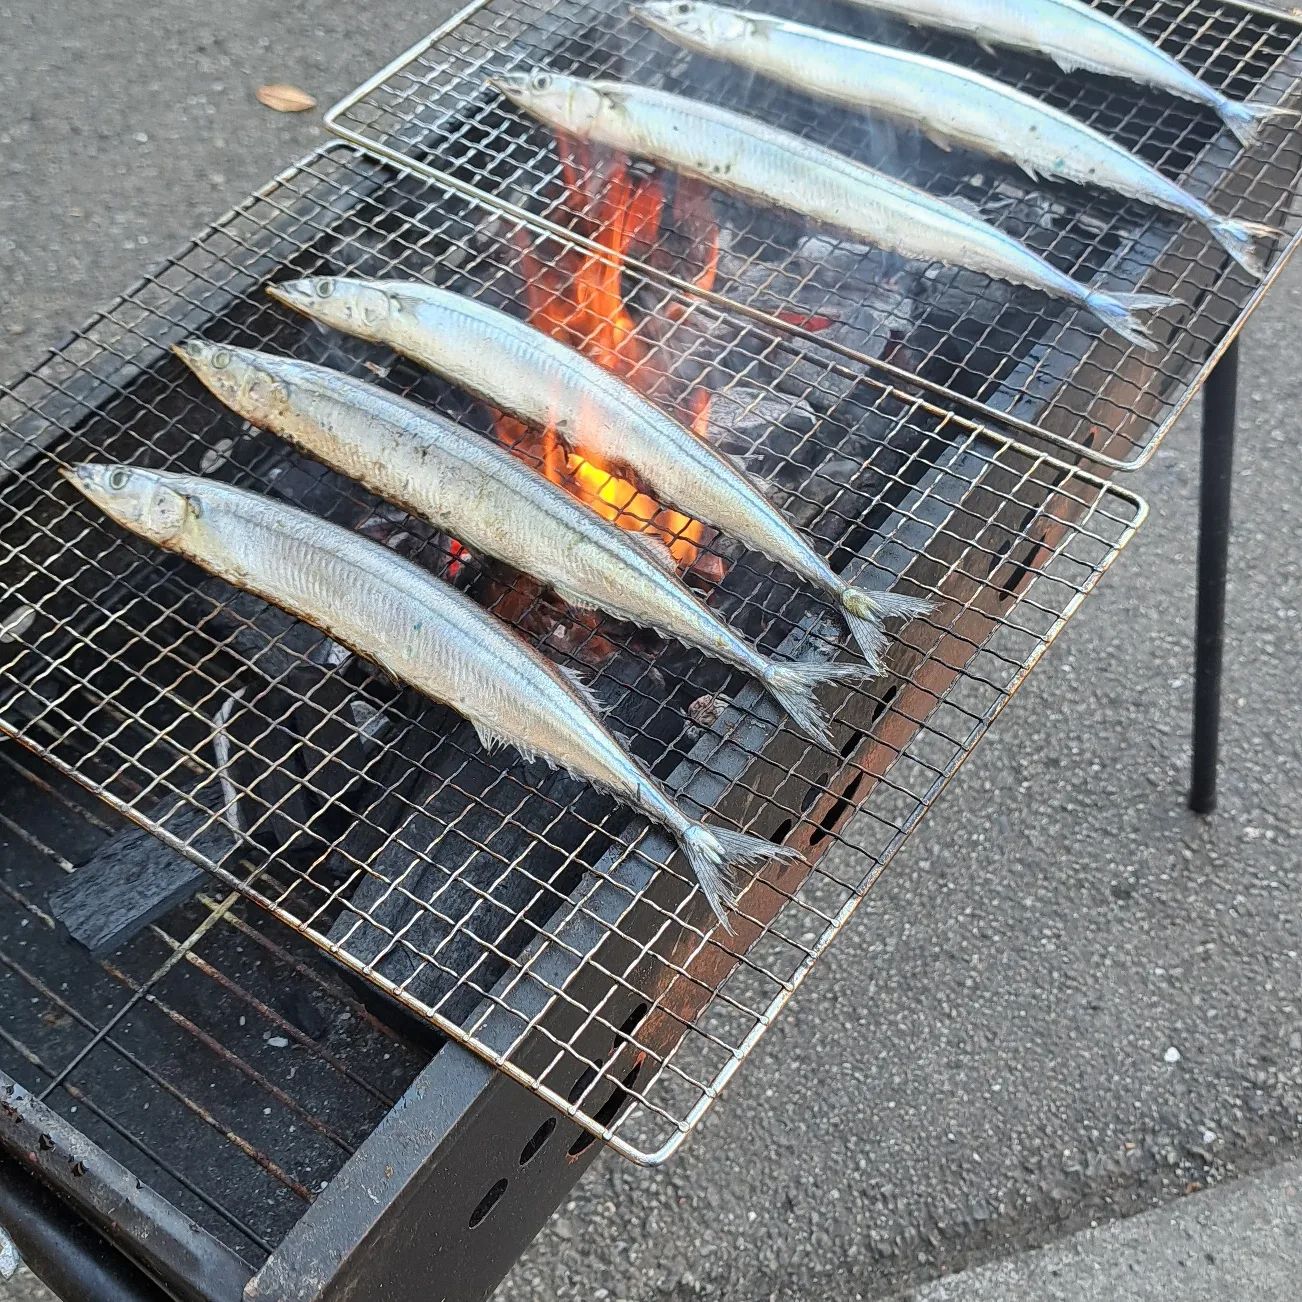 秋刀魚祭️炭火で秋刀魚を焼きあげ、お昼に召し上がっていただきましたおやつには焼き芋の予定です。焼きマシュマロ&チョコ&クラッカーで『スモア』も振る舞われました。美味しい秋の日です。#ウエルハイムヨコゼ 　#秩父 #横瀬町 　#秋刀魚祭り 　#特養の日常 　#焼き芋 　#スモア